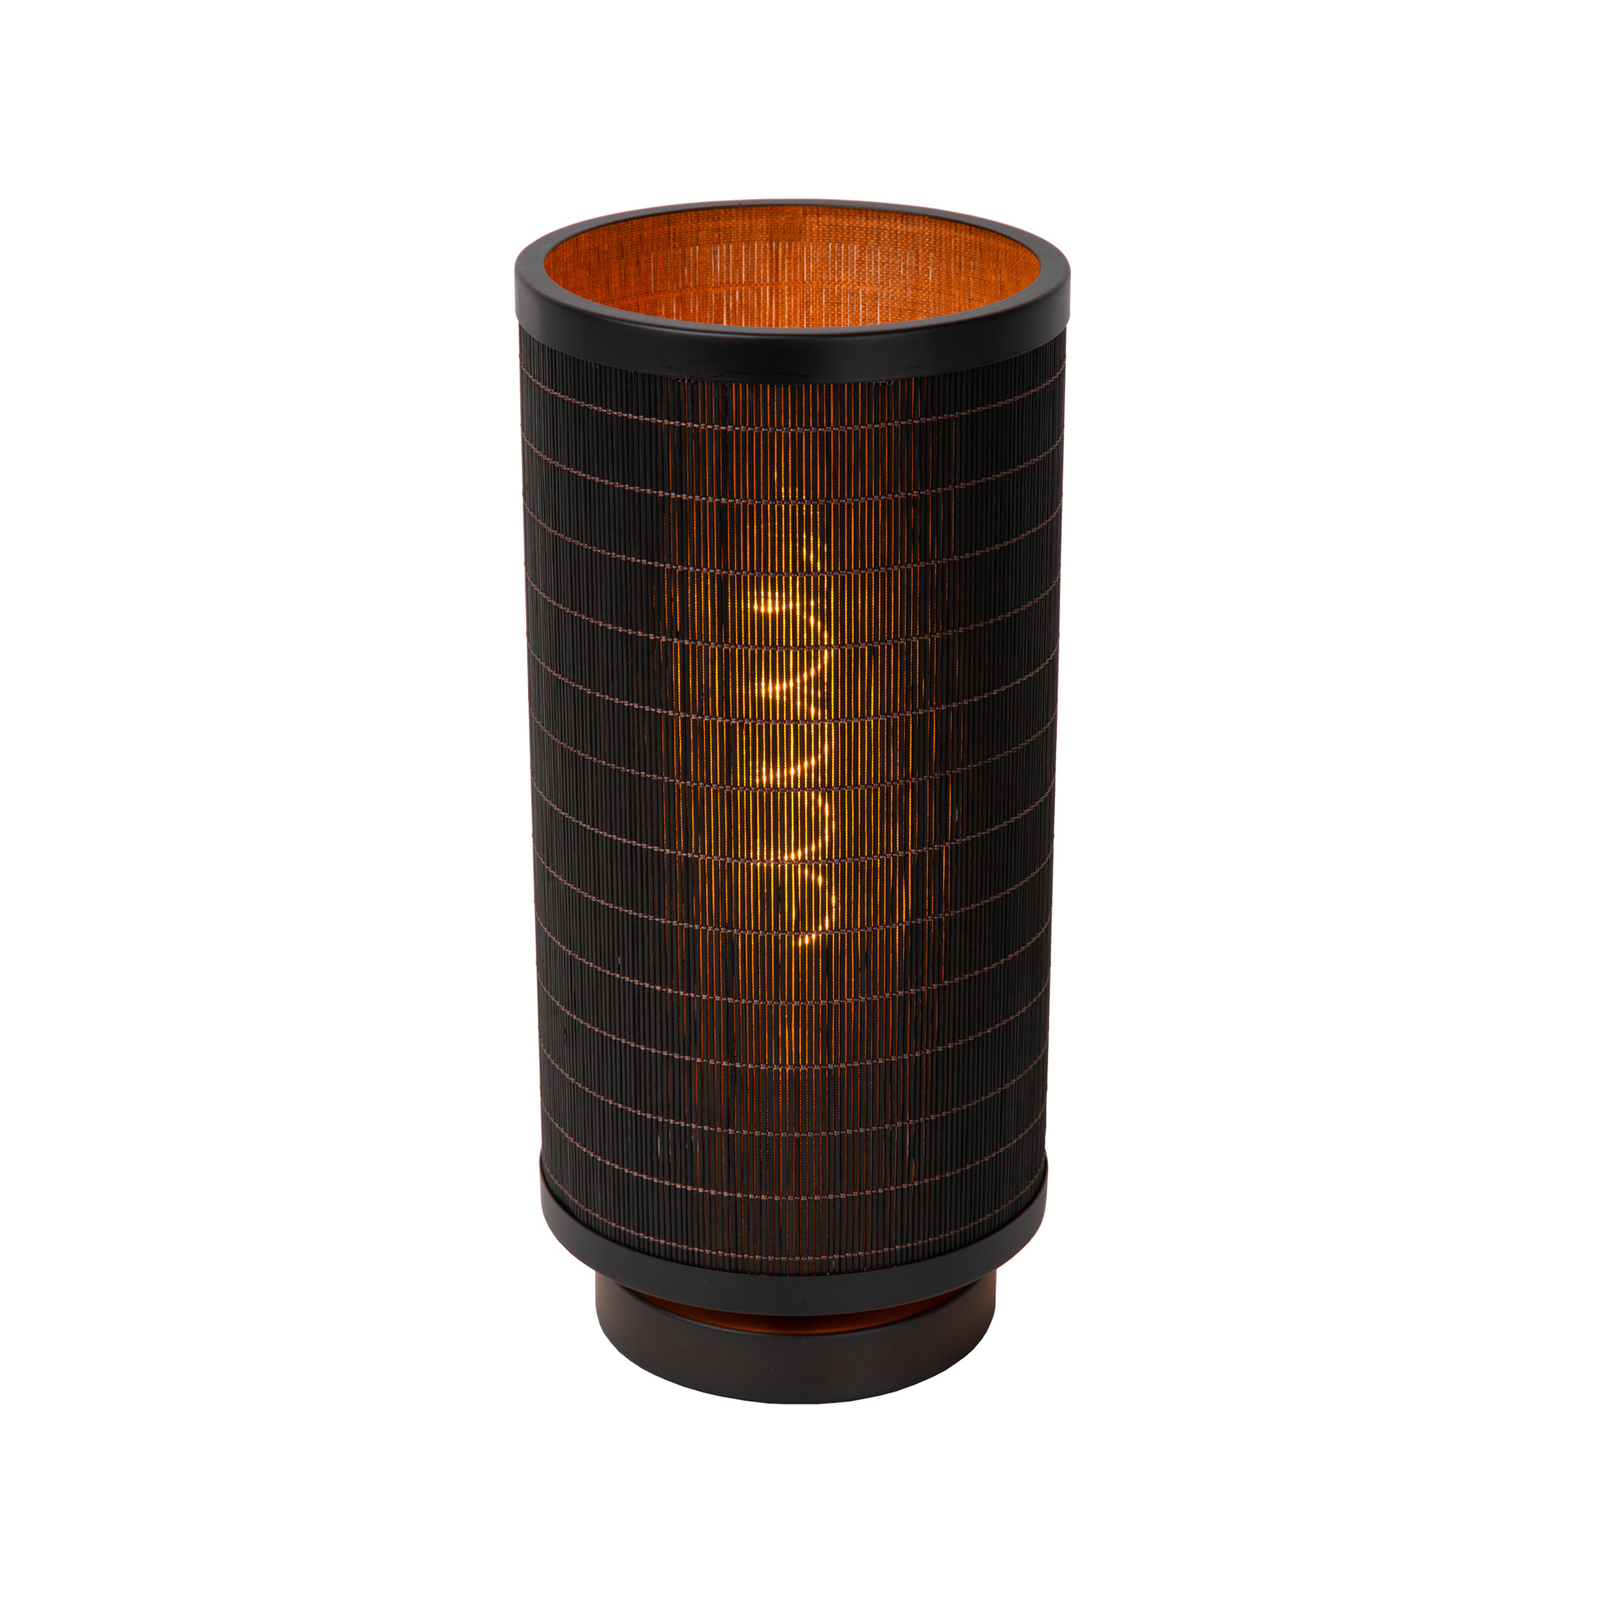 Tagalog bordlampe af bambus, sort